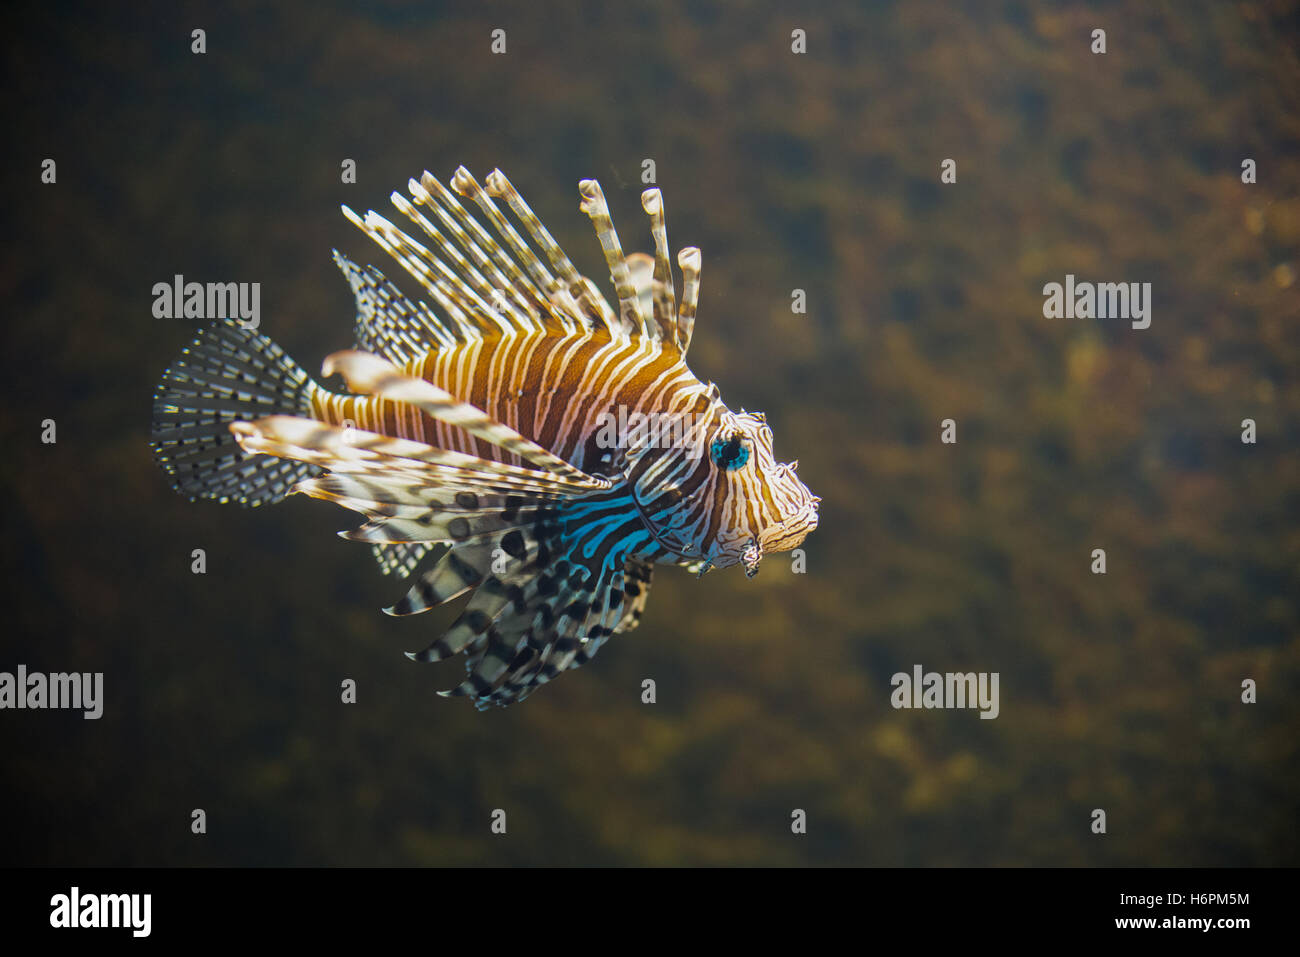 close up on Common lionfish (Pterois miles) portrait Stock Photo